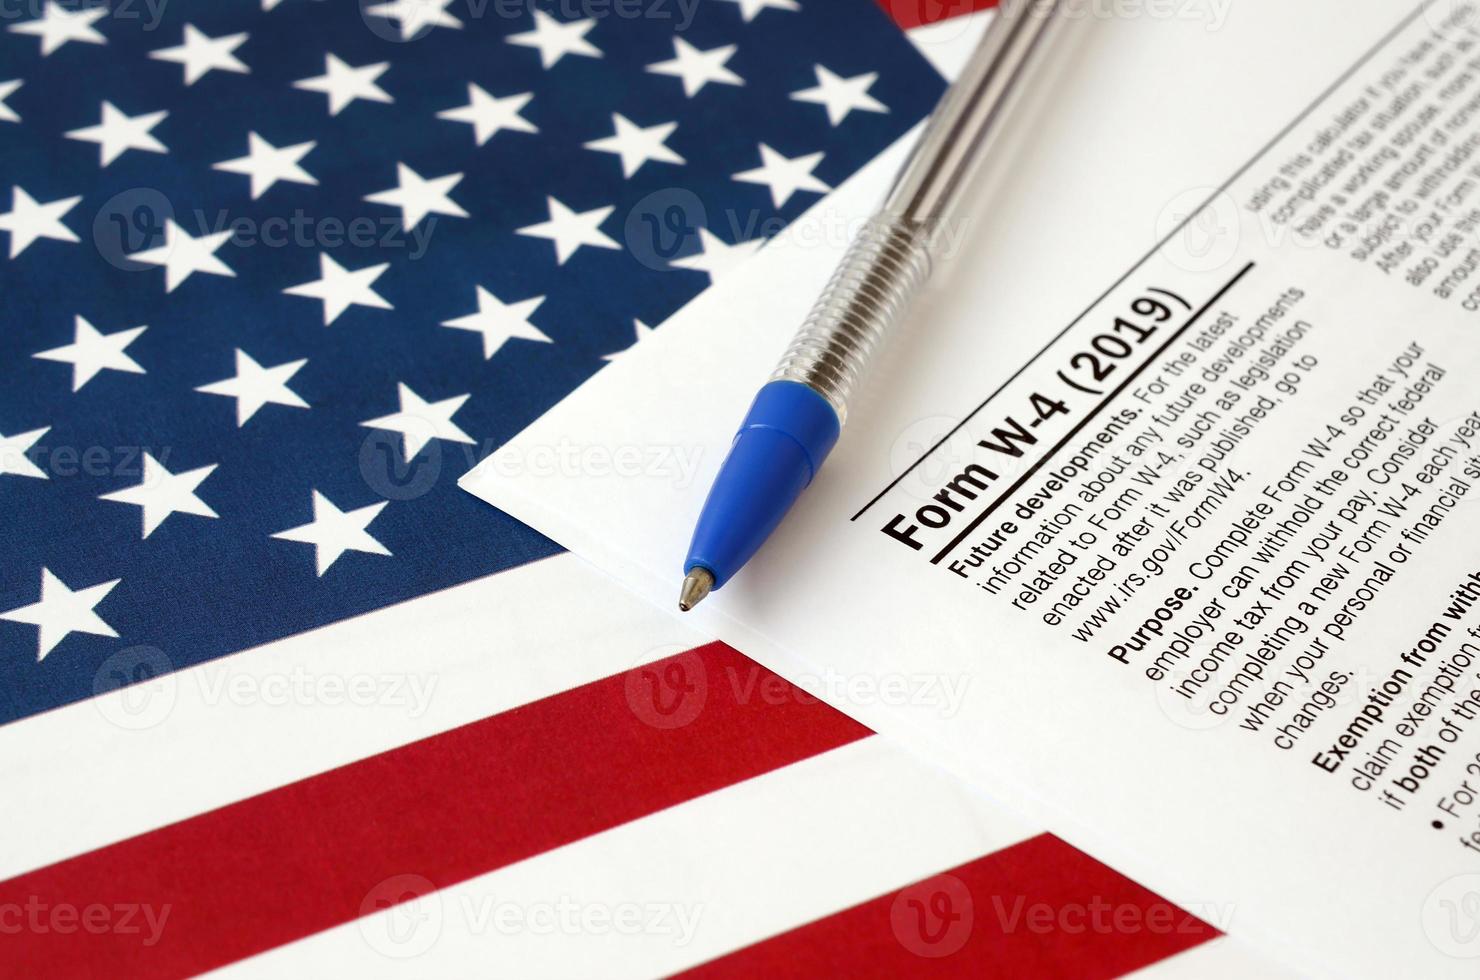 formulario w-4 instrucciones del certificado de asignación de retención del empleado y bolígrafo azul en la bandera de los estados unidos. formulario de impuestos del servicio de impuestos internos foto